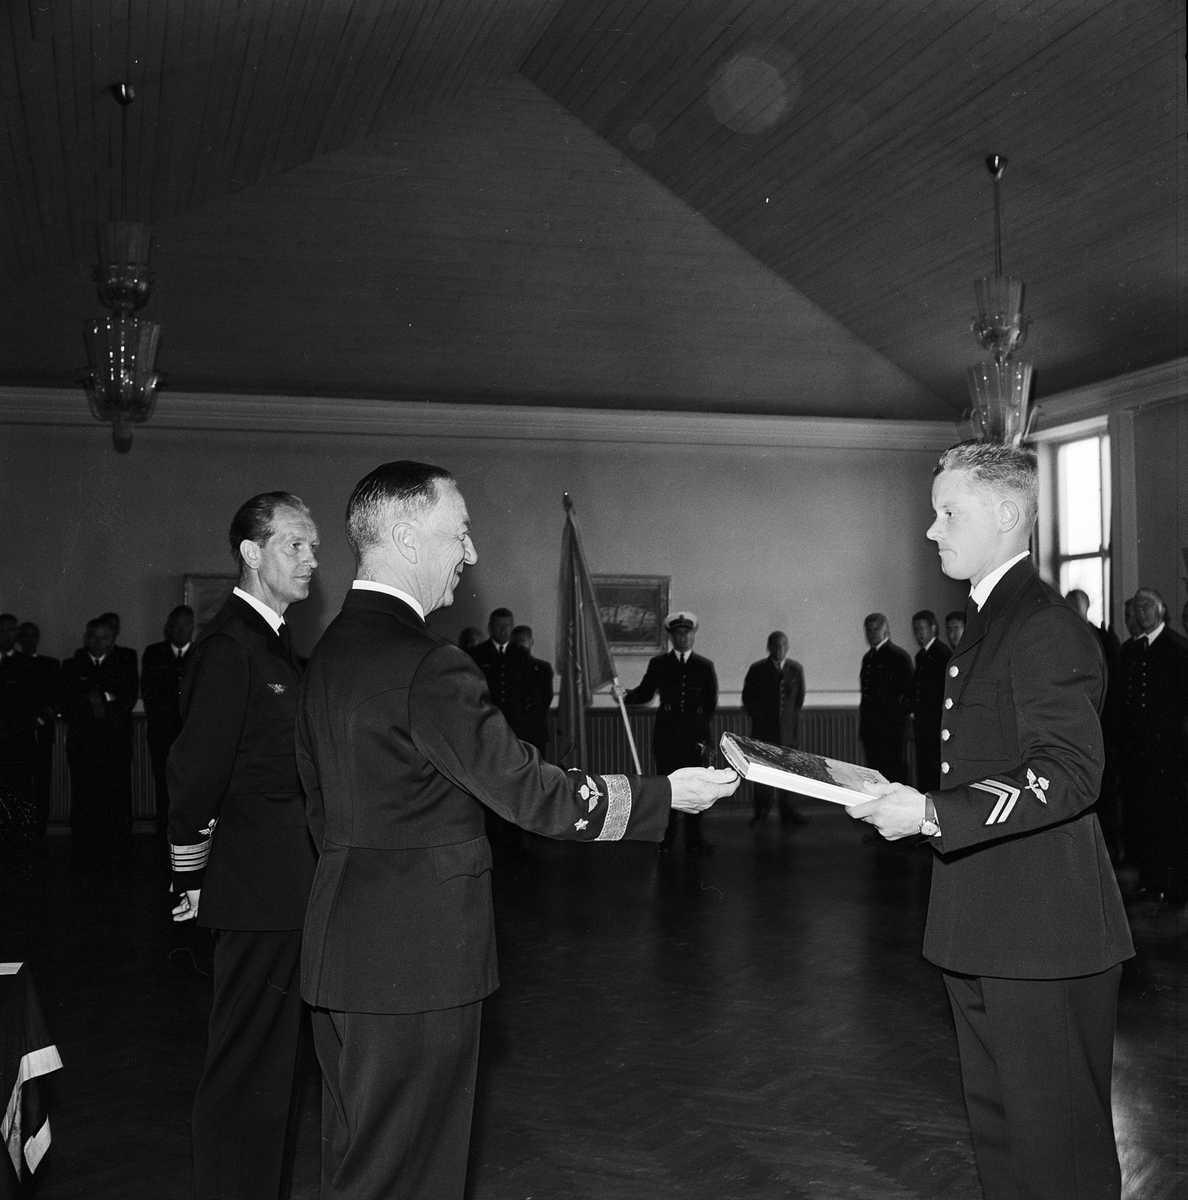 F 20, nya flygofficerare, Uppsala 1964